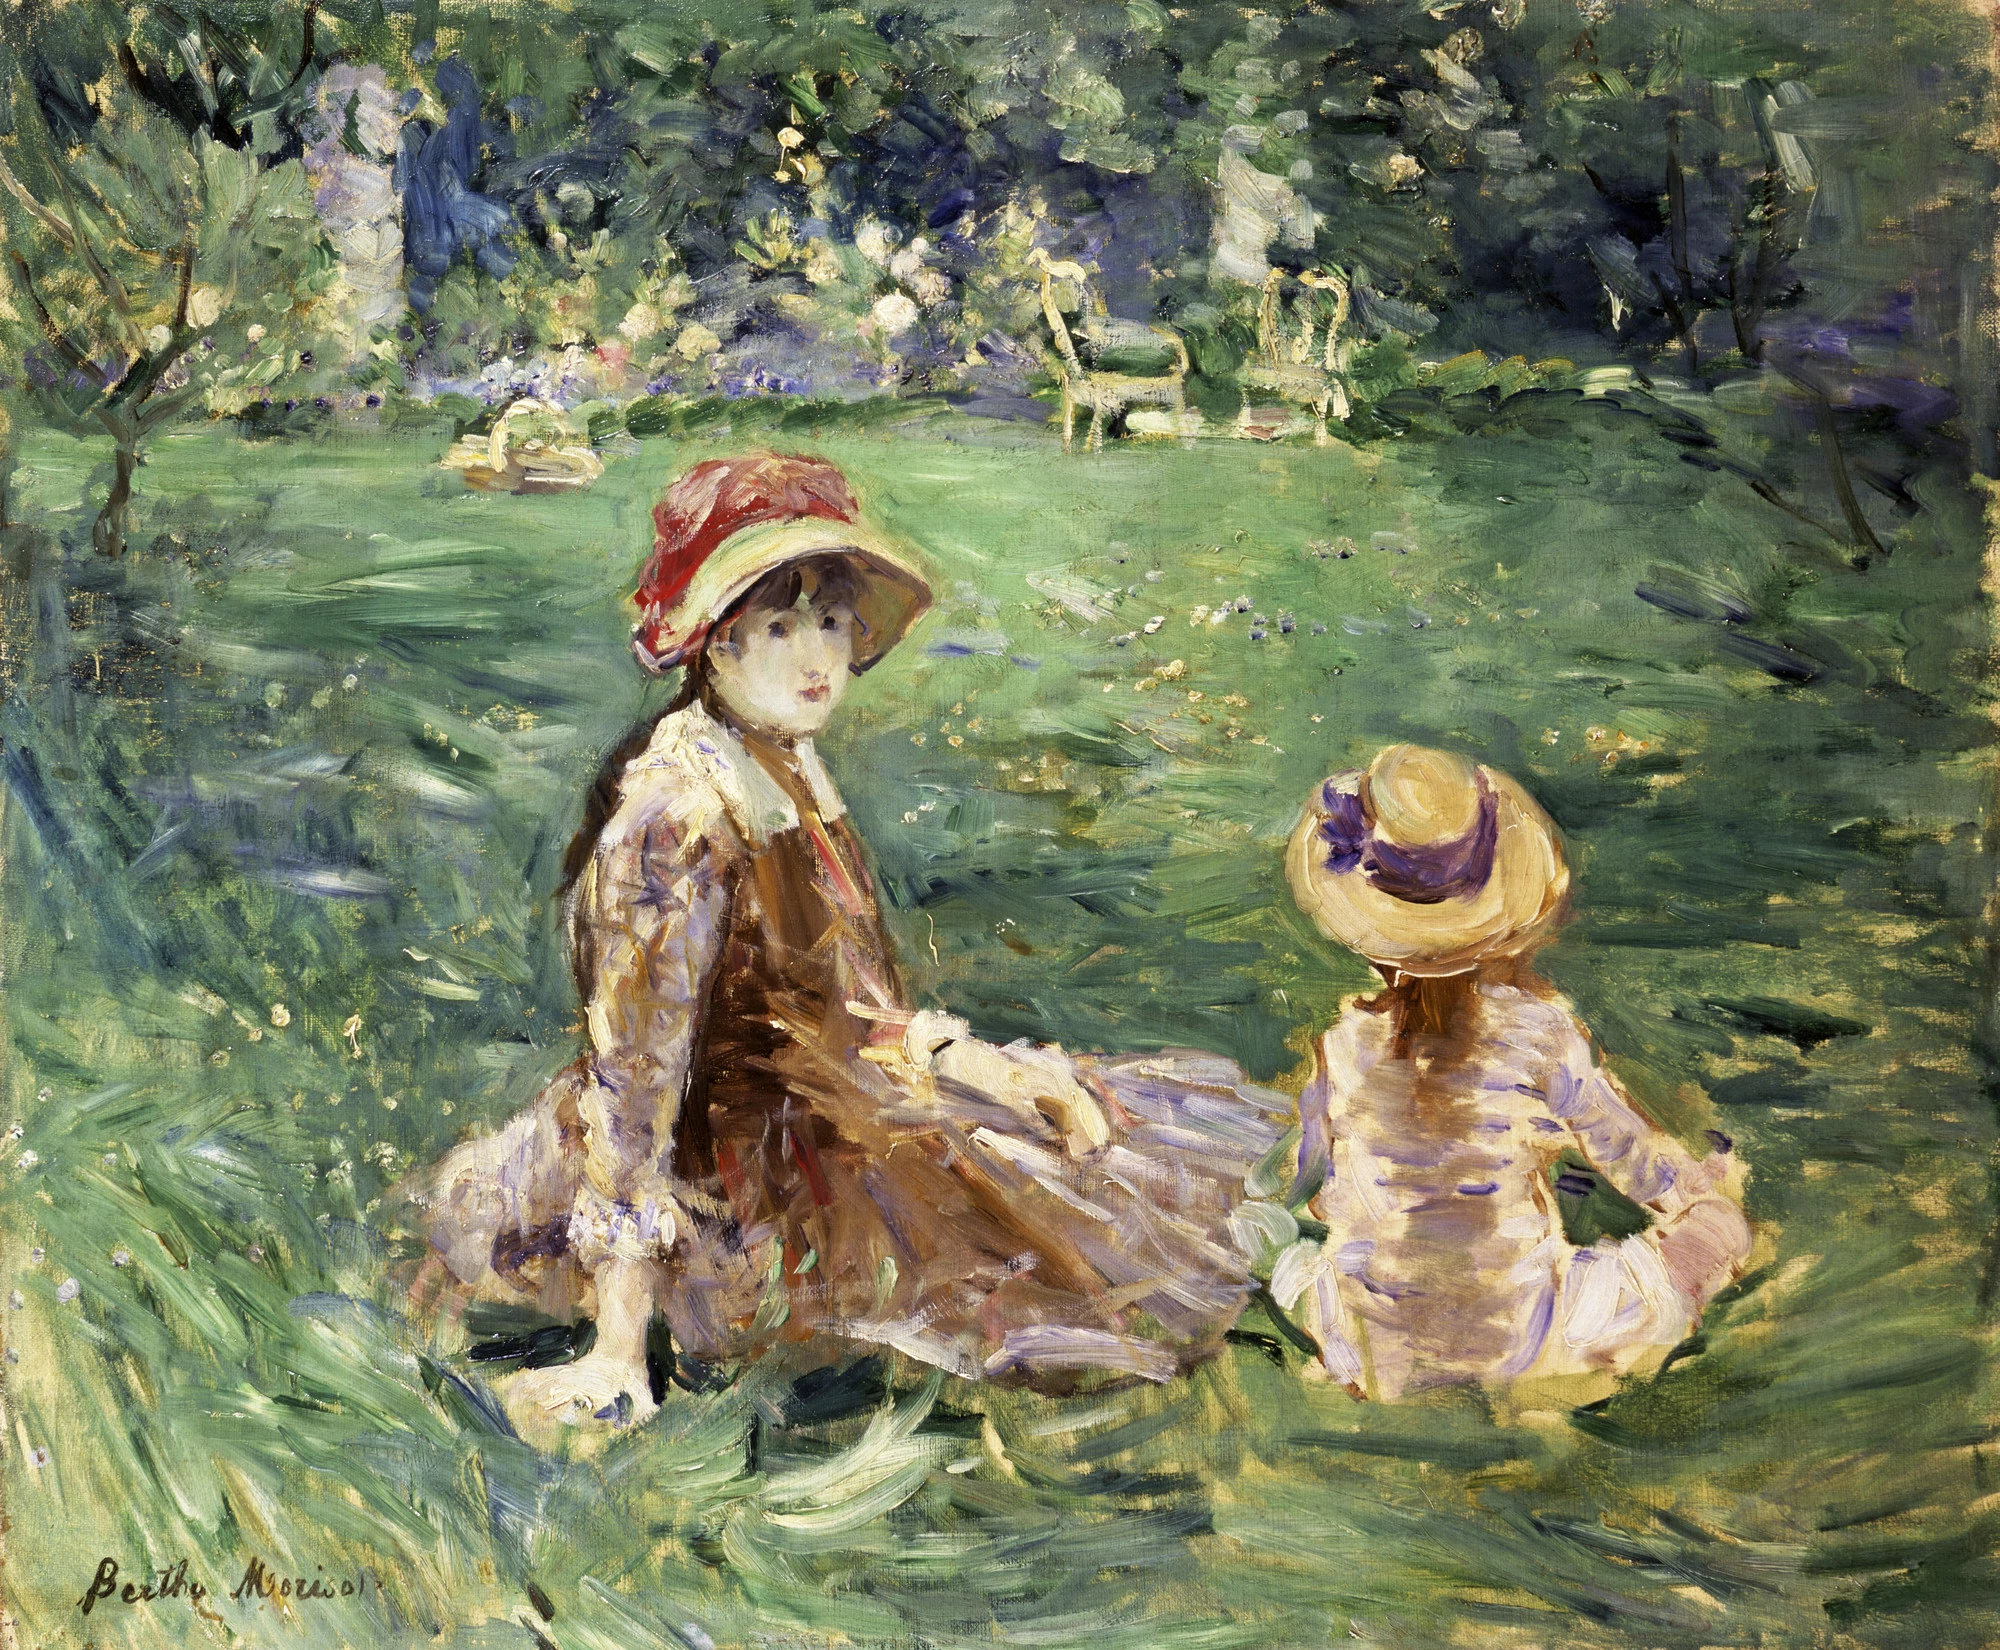 In the Garden at Maurecourt, Berthe Morisot